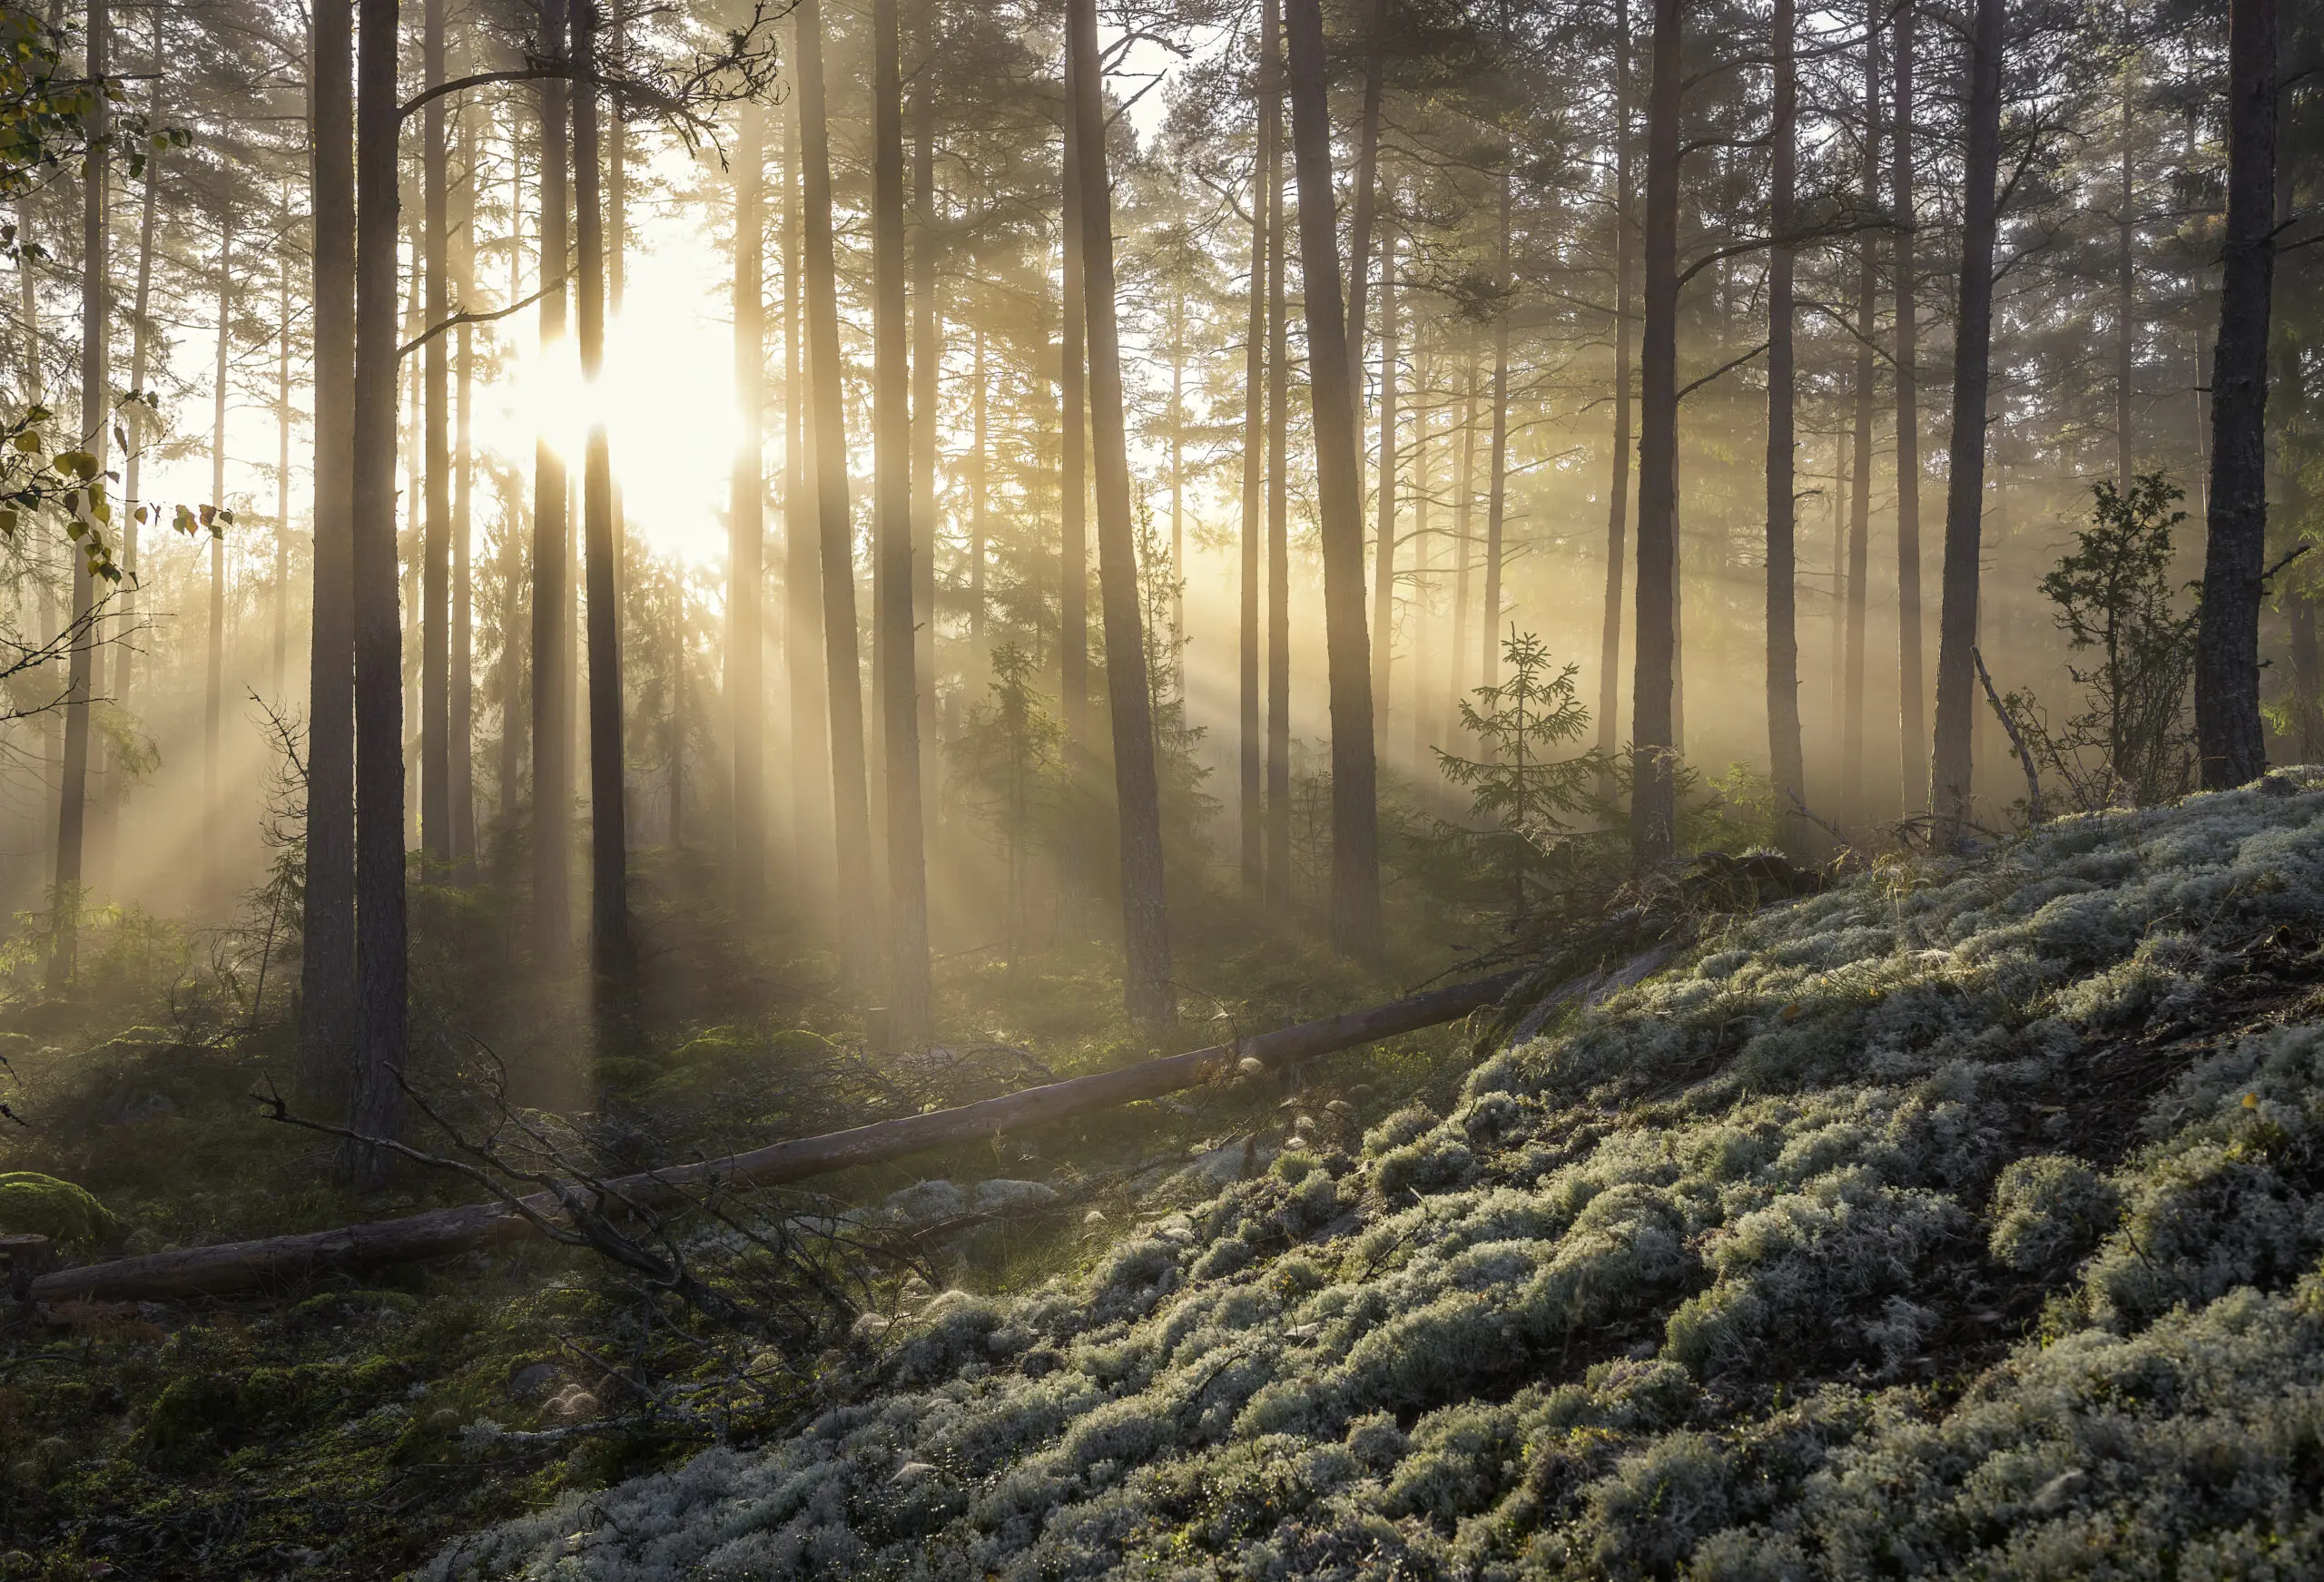 Wandbild (6141) Fog in the forest…by Christian Linsten, 1x.com präsentiert: Natur,Landschaften,Bäume,Wälder,Herbst